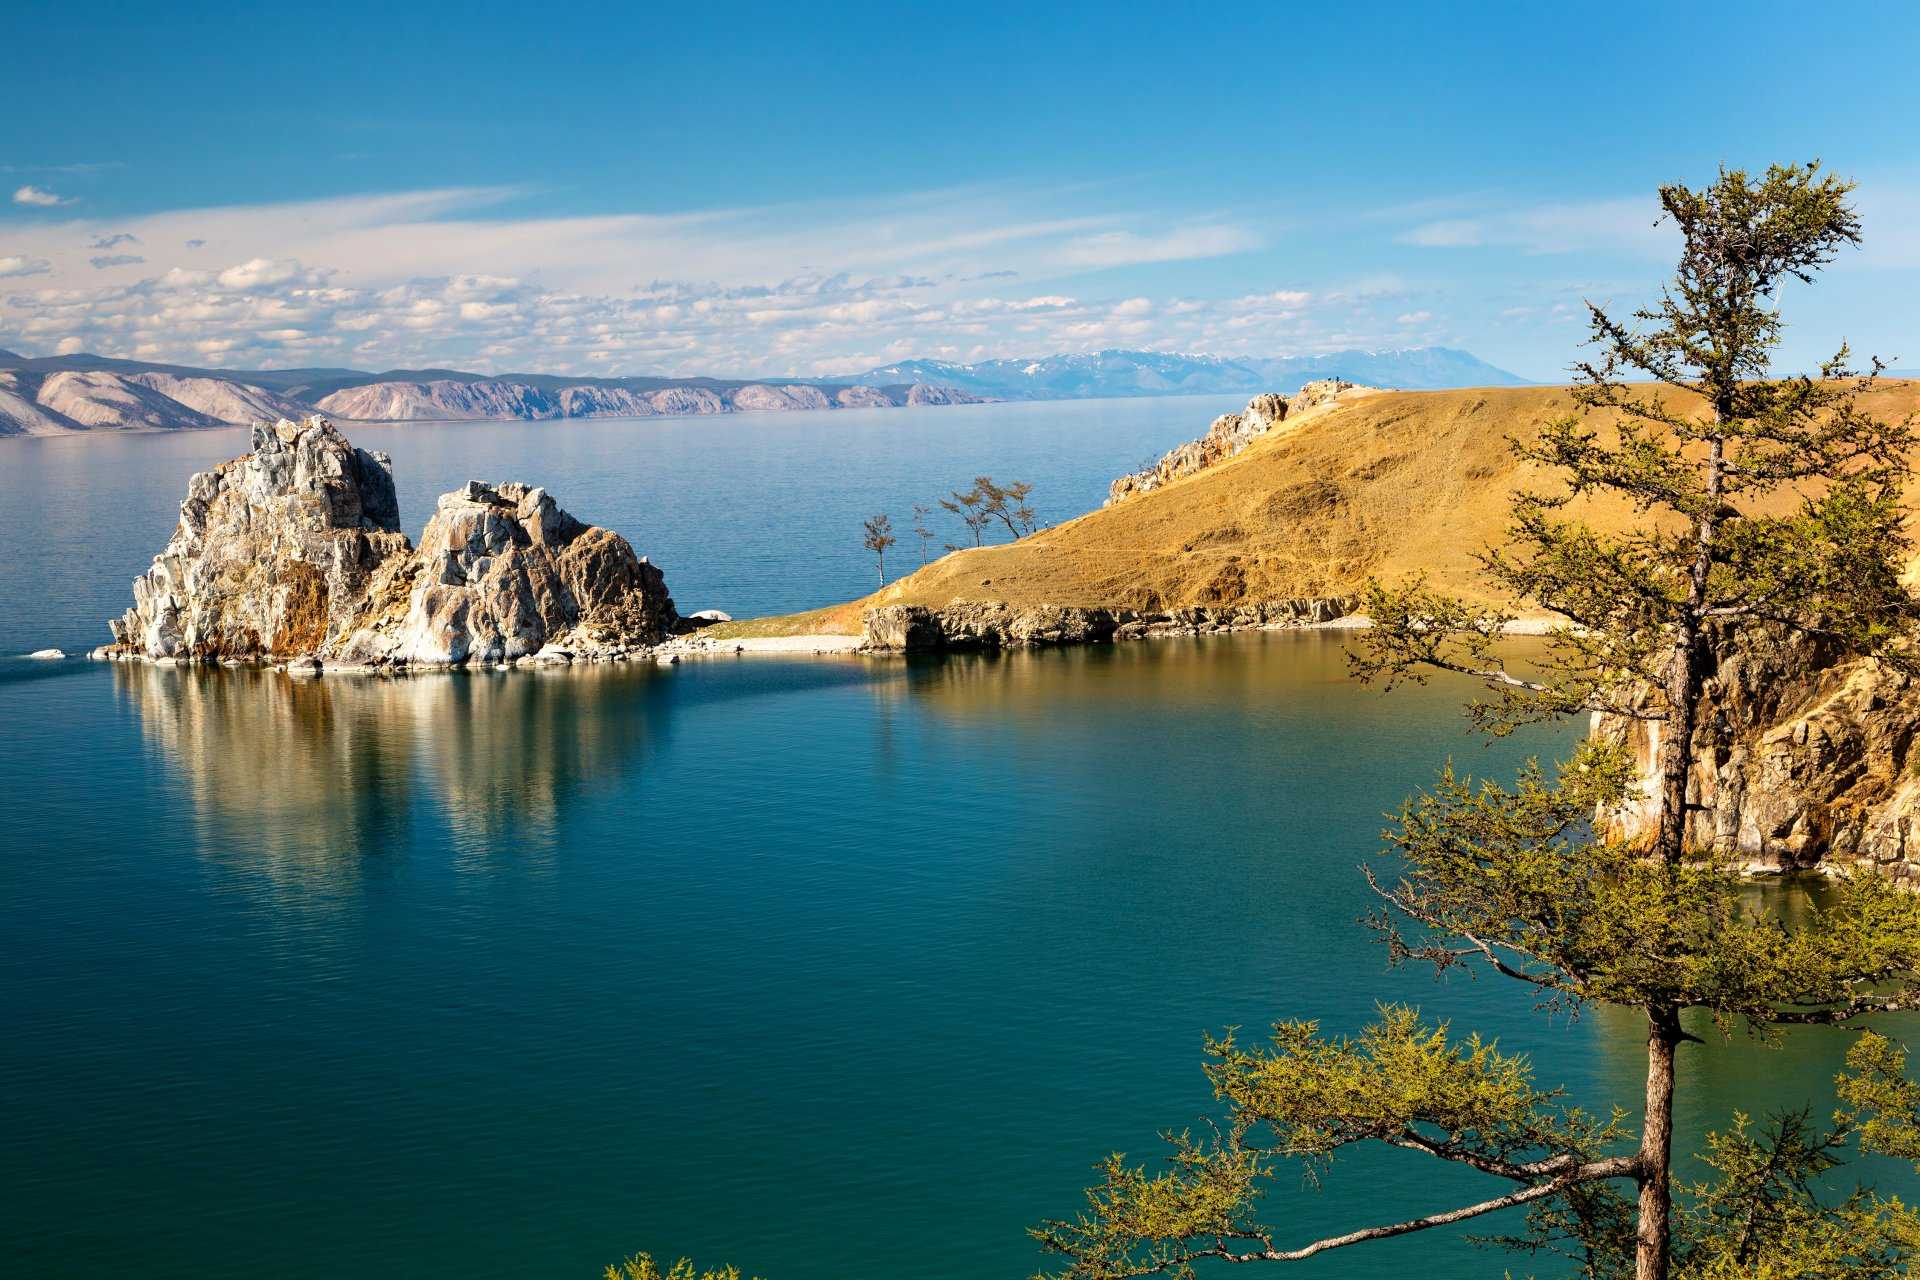 ТОП-10 самых крупных озер России: фото, названия, описание Самое крупное озеро в европейской части России Самое крупное пресноводное озеро